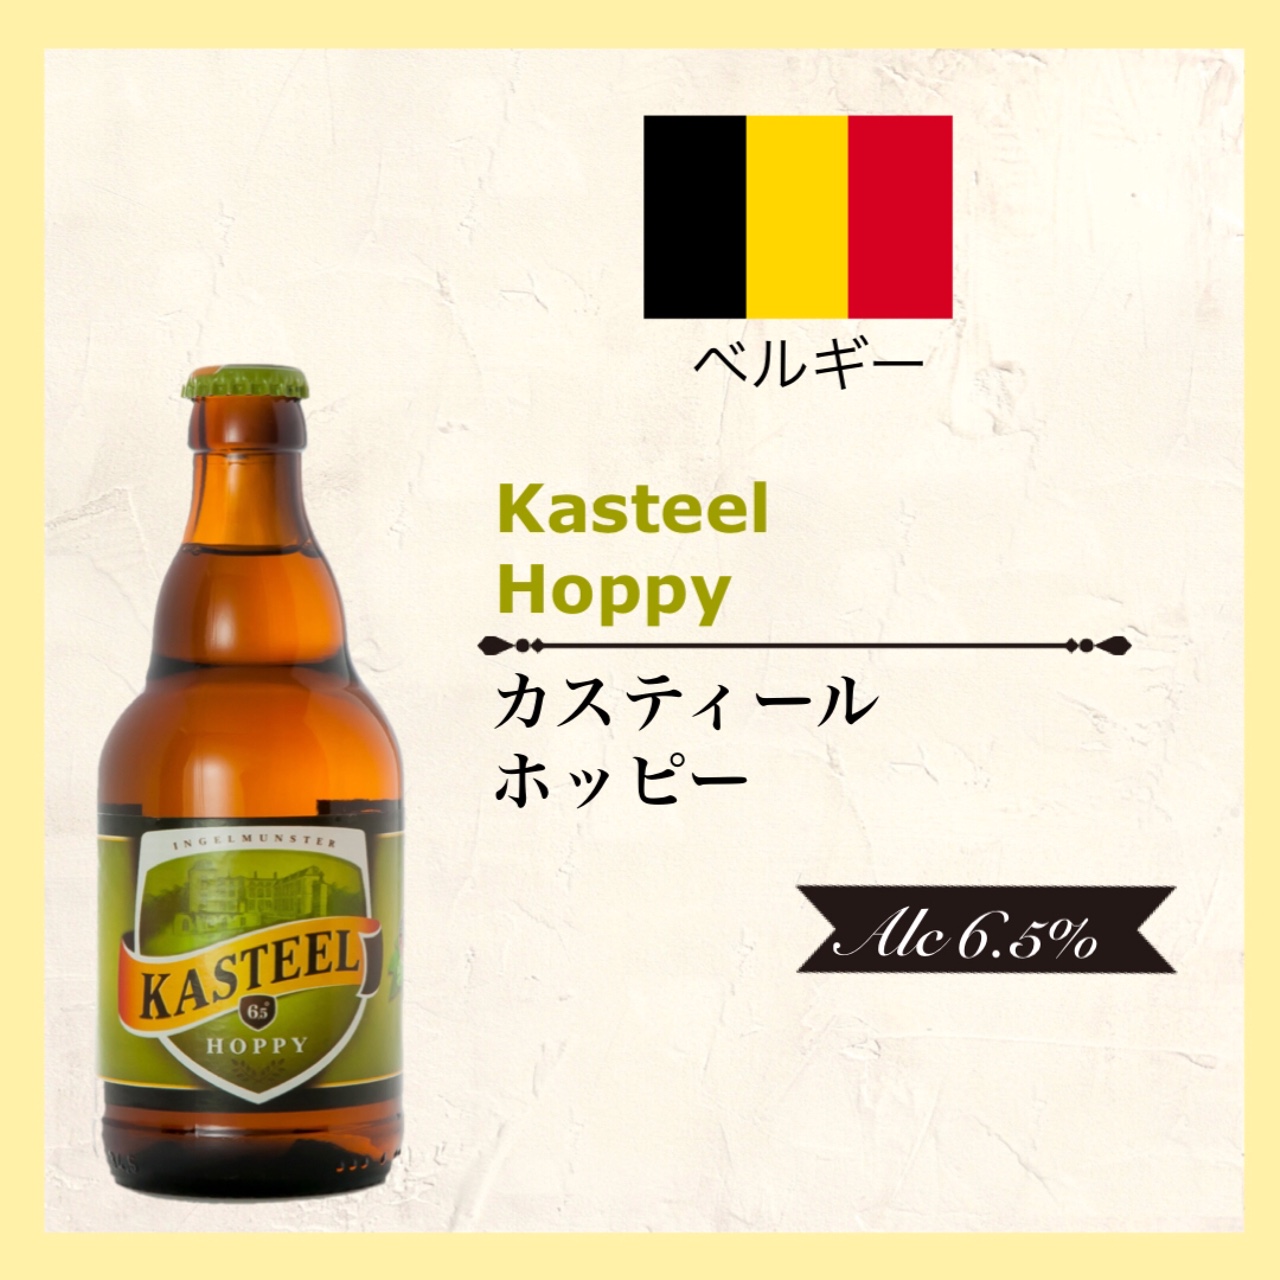 KASTEEL Hoppy (ｶｽﾃｨｰﾙ ﾎｯﾋﾟｰ) 330ml